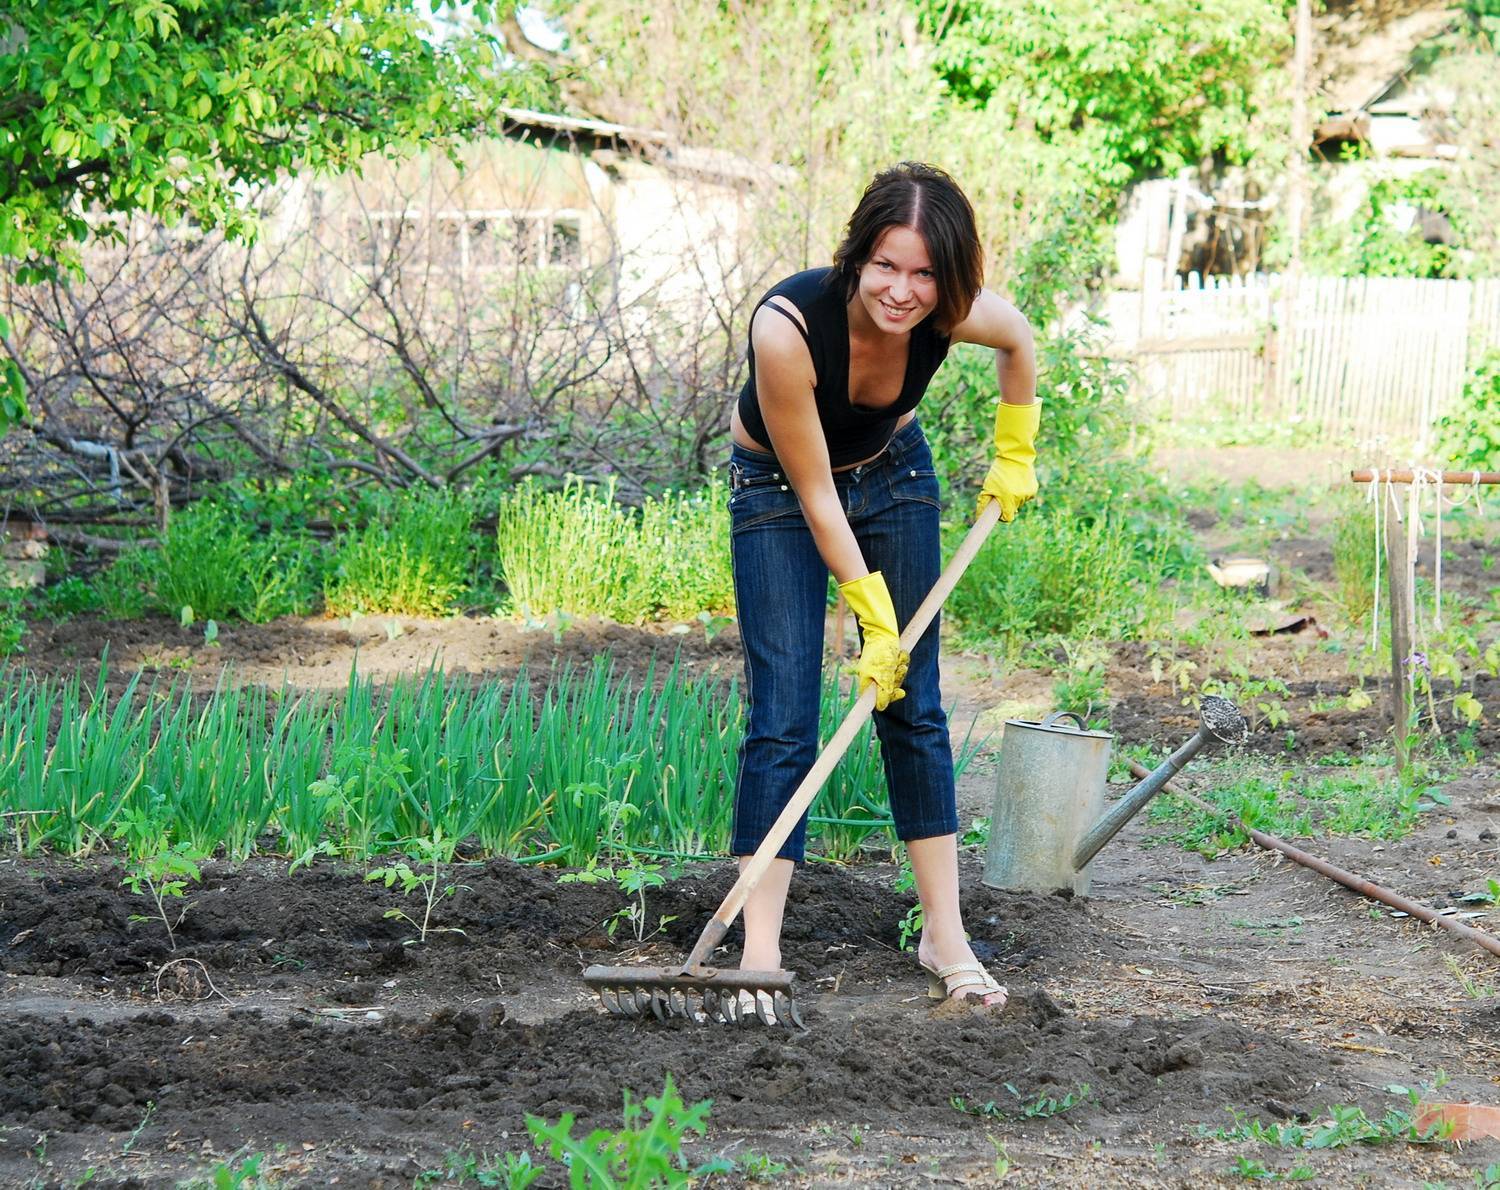 Садовые работы на даче – как облегчить свой труд? + видео